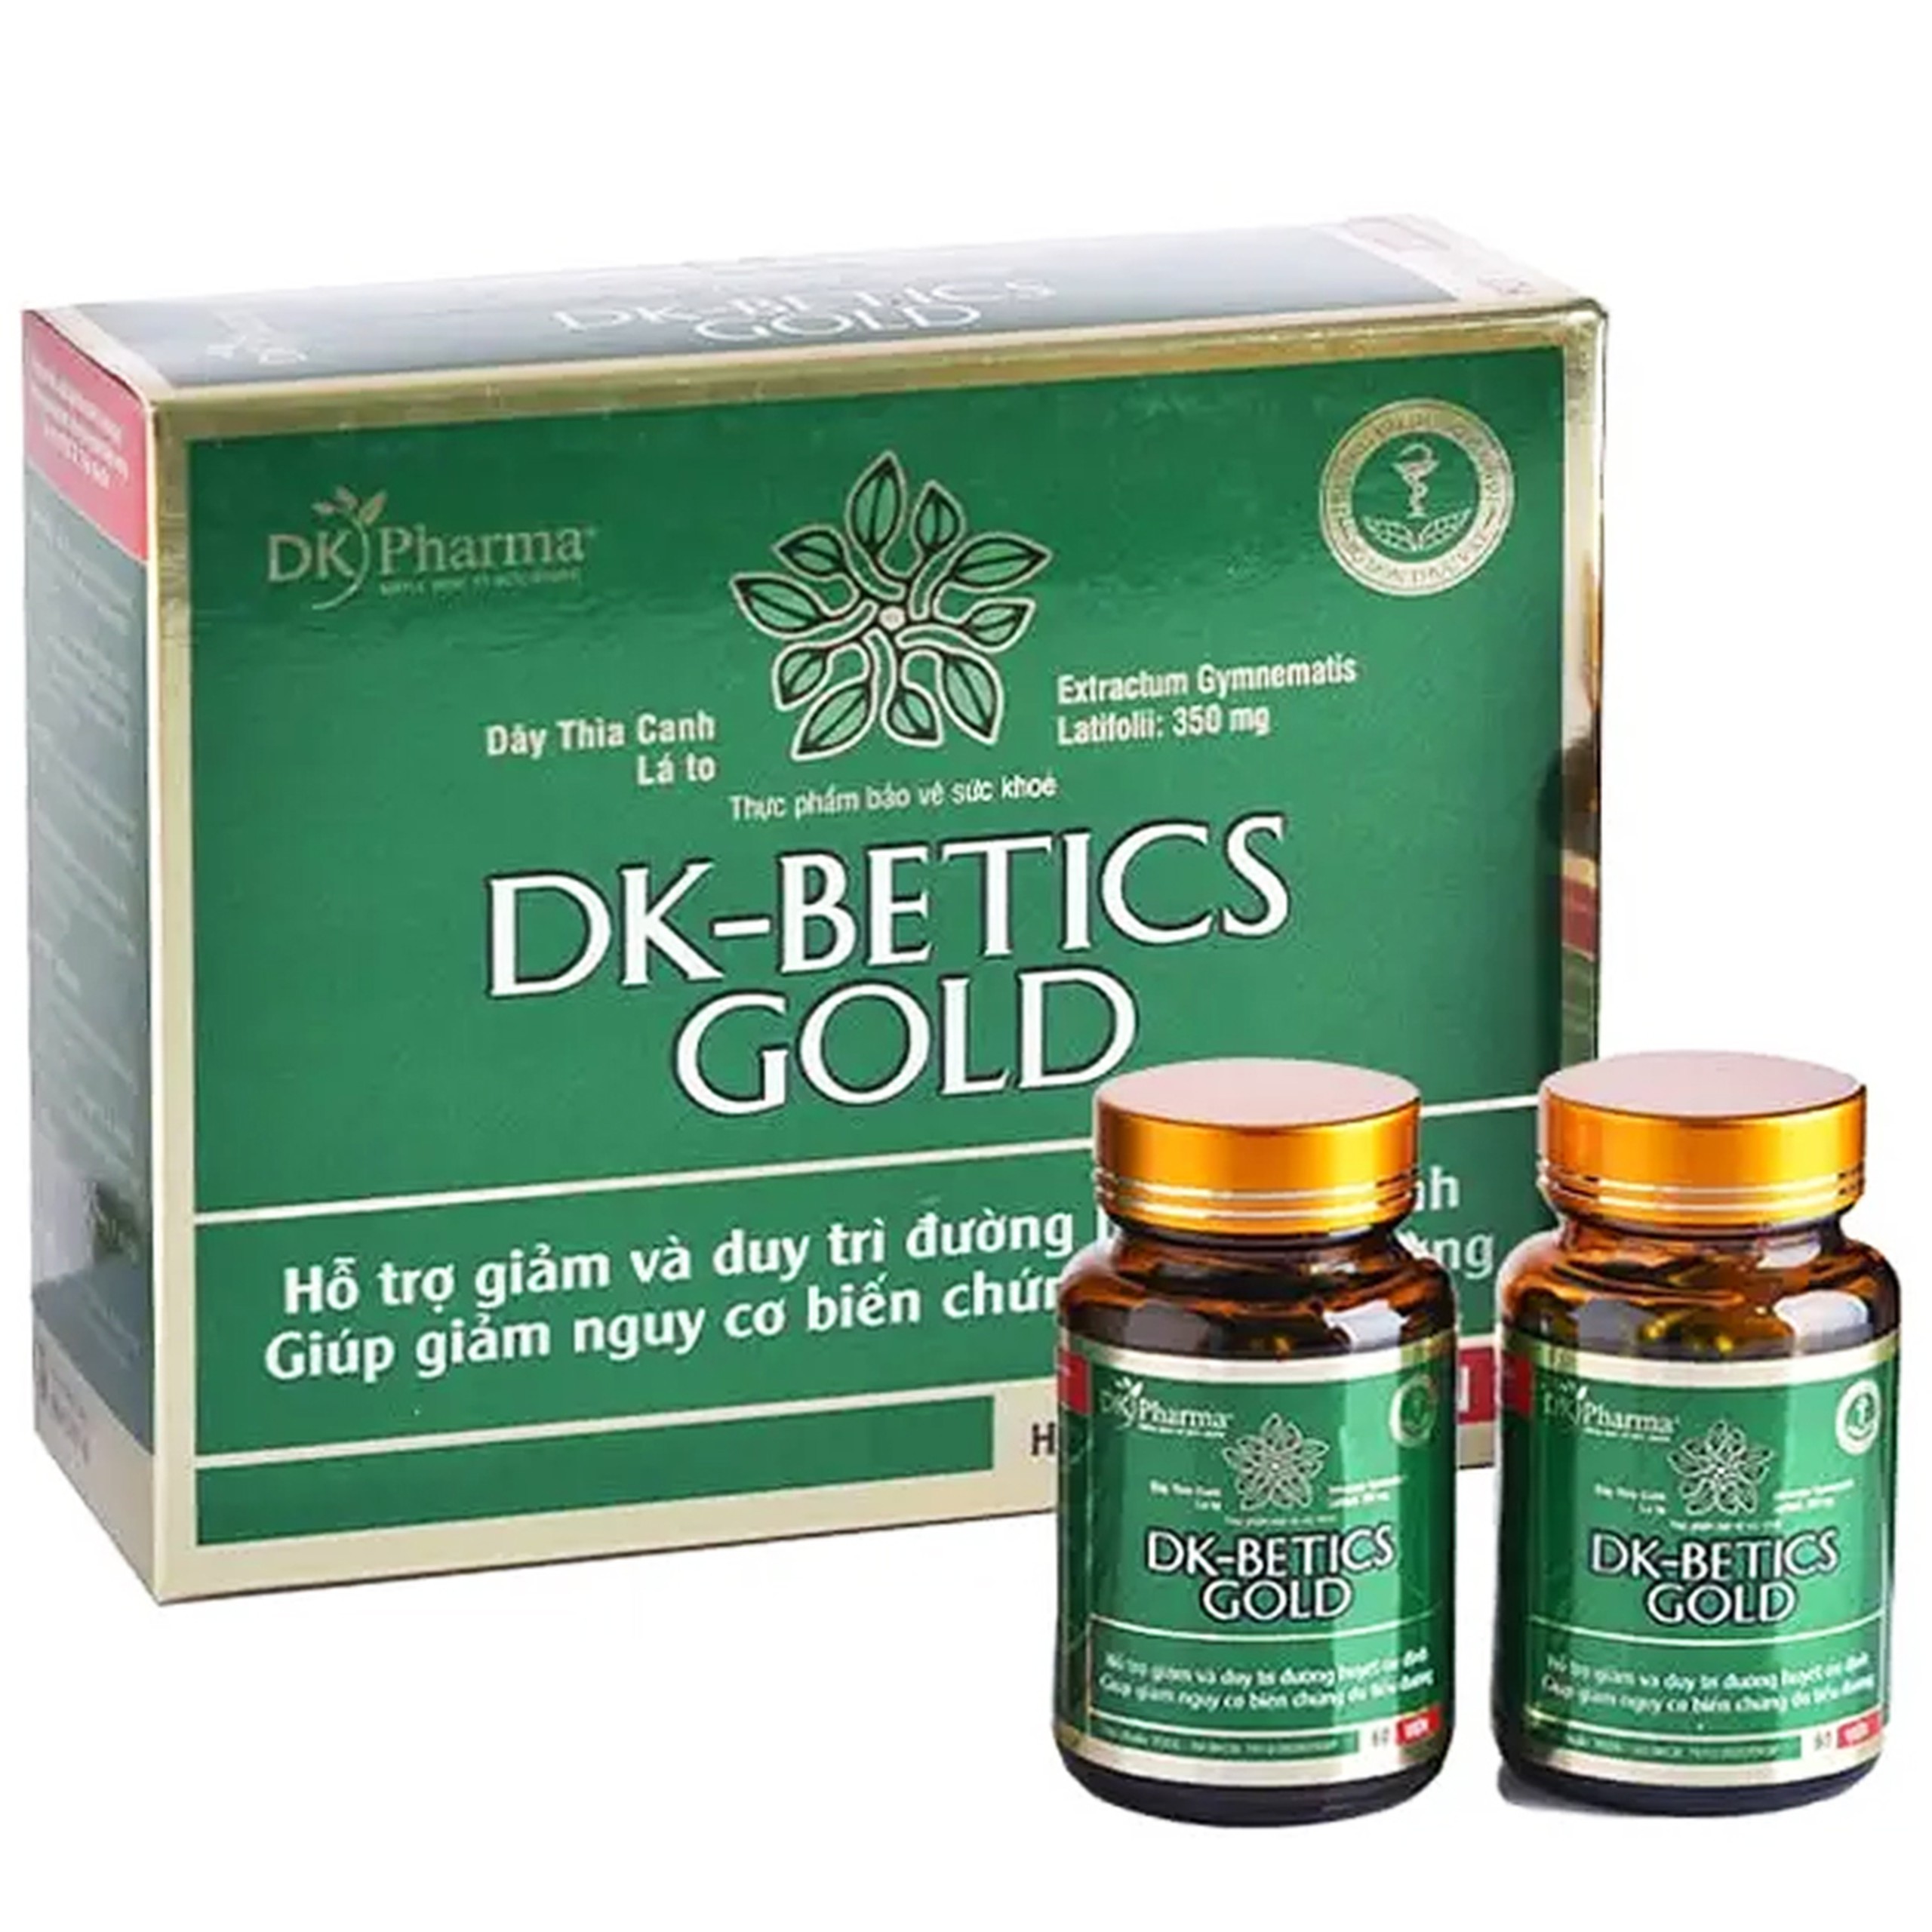 Viên uống DK-Betics Gold hỗ trợ giảm và duy trì đường huyết ổn định, biến chứng do tiểu đường (2 lọ x 60 viên)